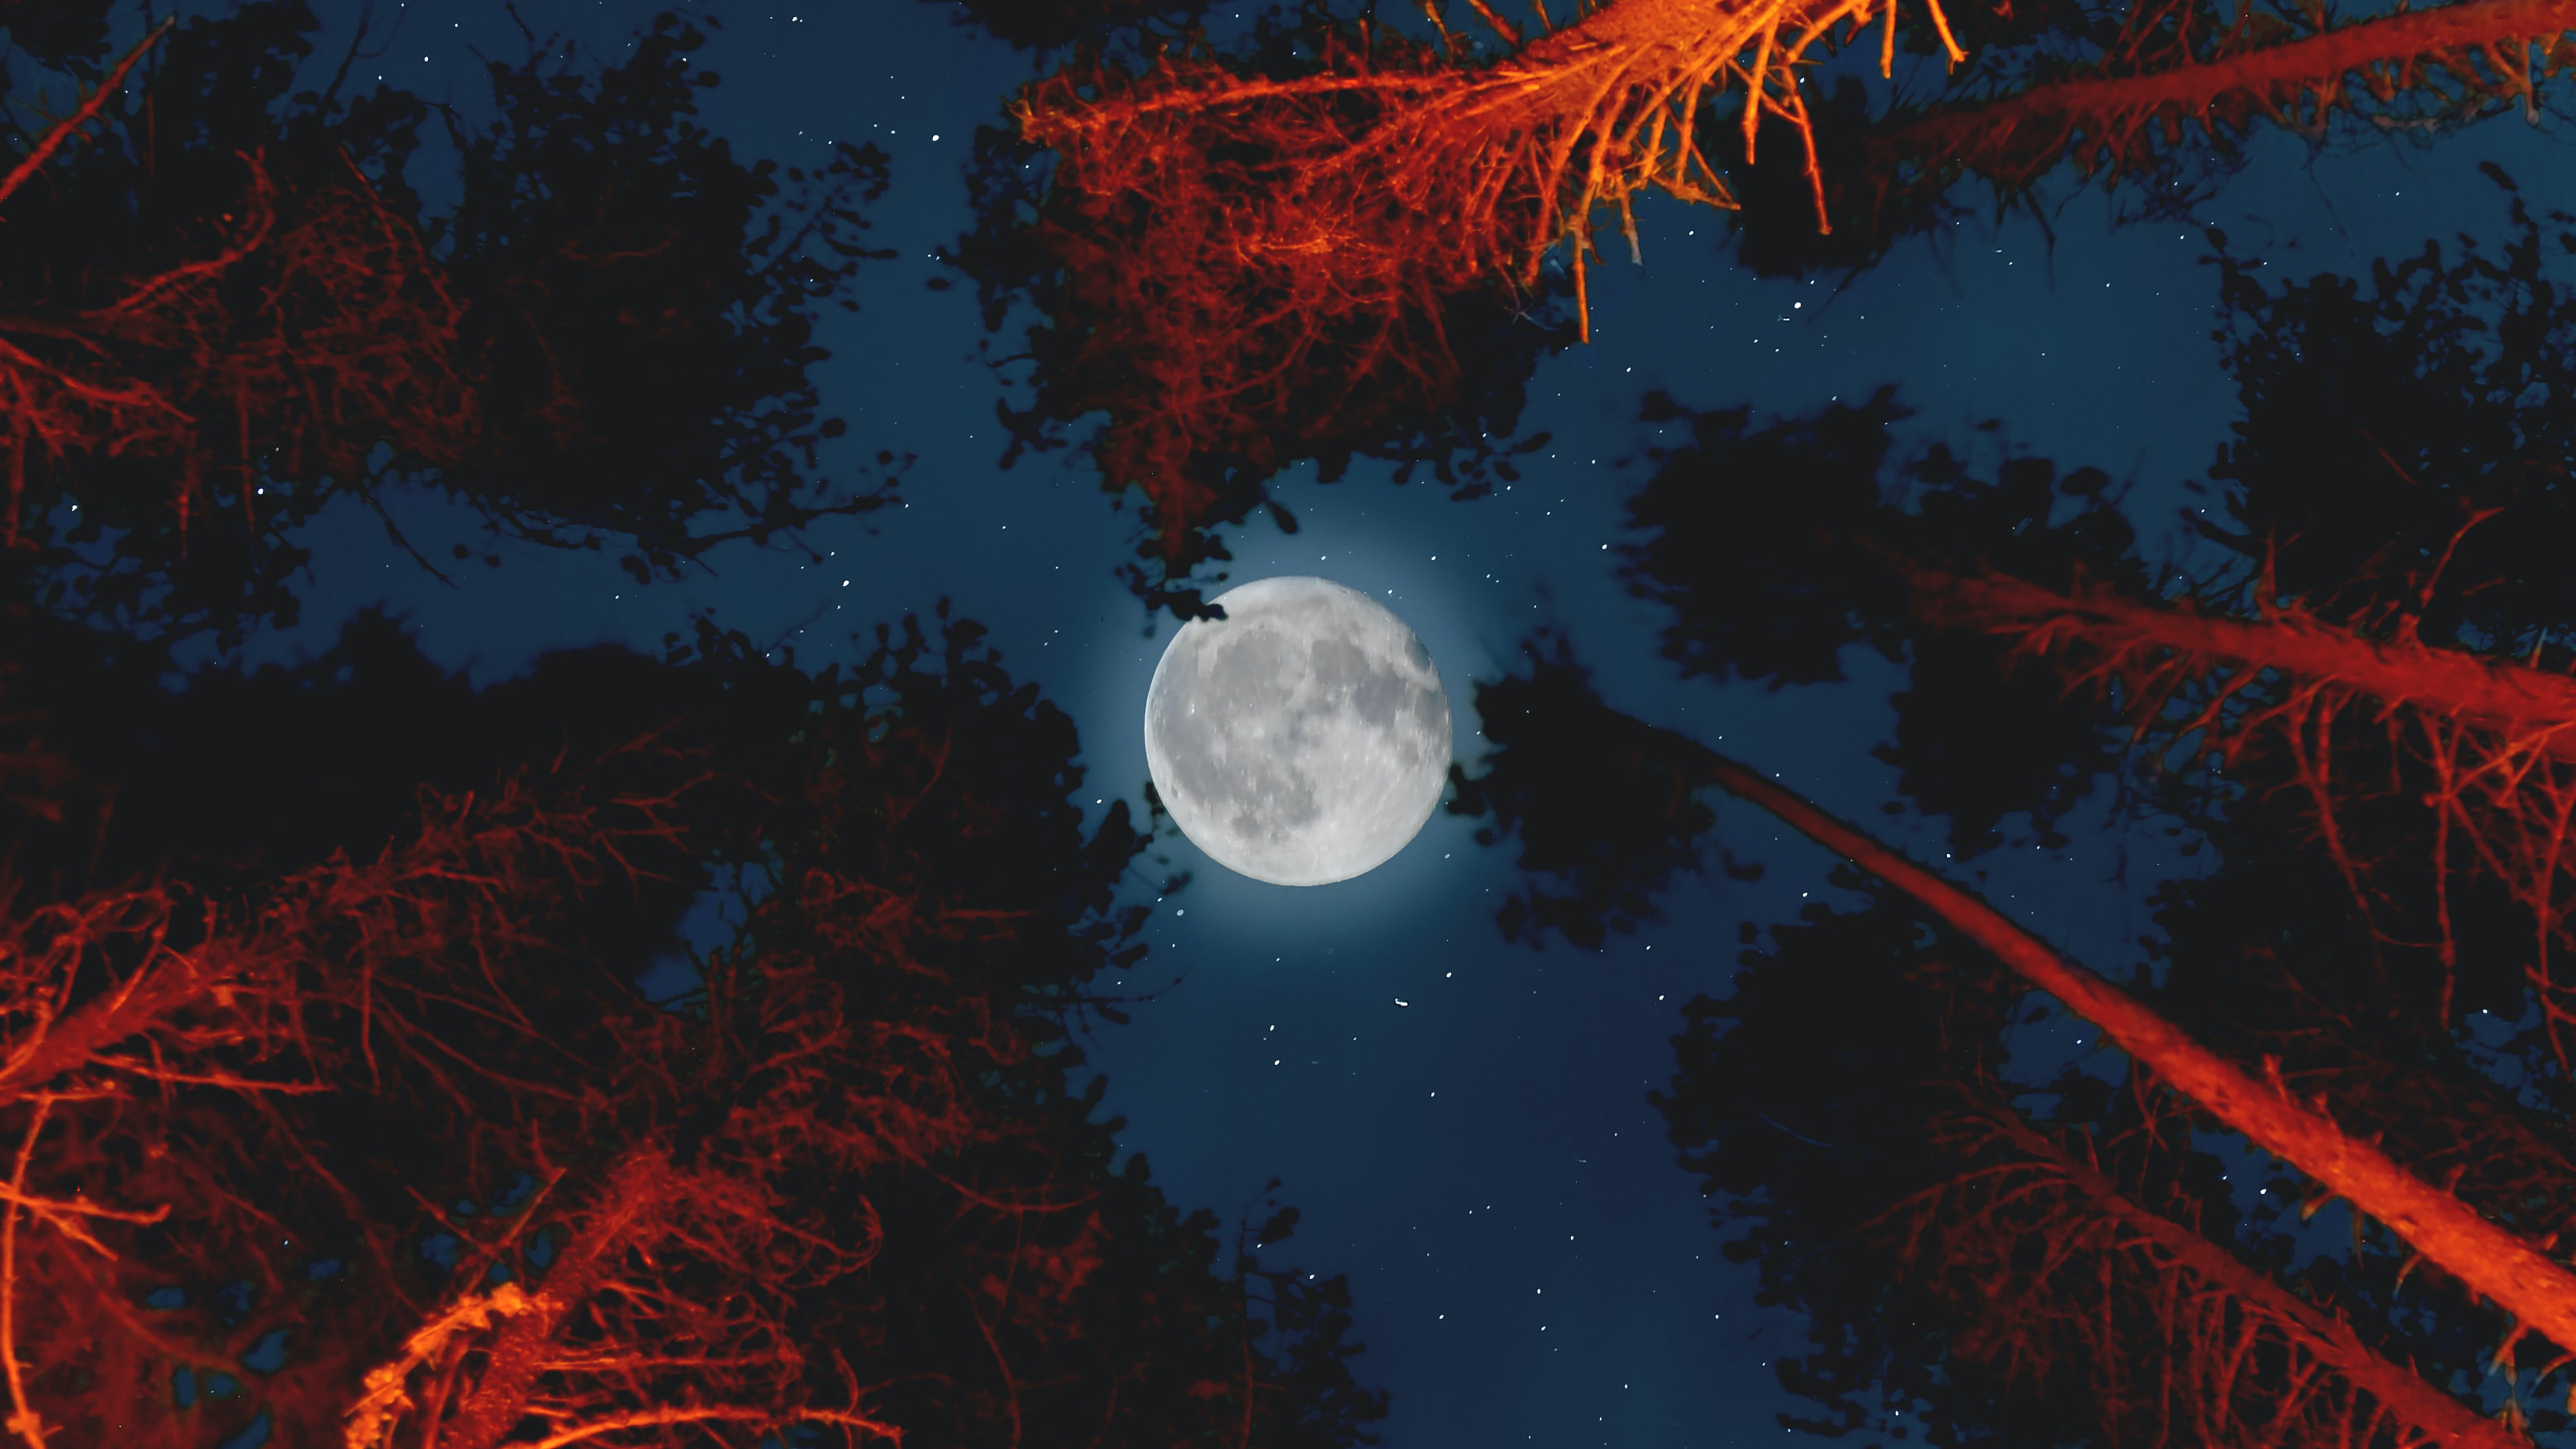 Trăng tròn bởi Jordan Steranka là một tác phẩm nghệ thuật tuyệt vời. Ánh sáng màu trắng của mặt trăng trông đẹp như thế nào khi được lấy làm chủ đề trong bức ảnh này. Hãy xem bức ảnh này và cảm nhận sự độc đáo và sáng tạo của nó.